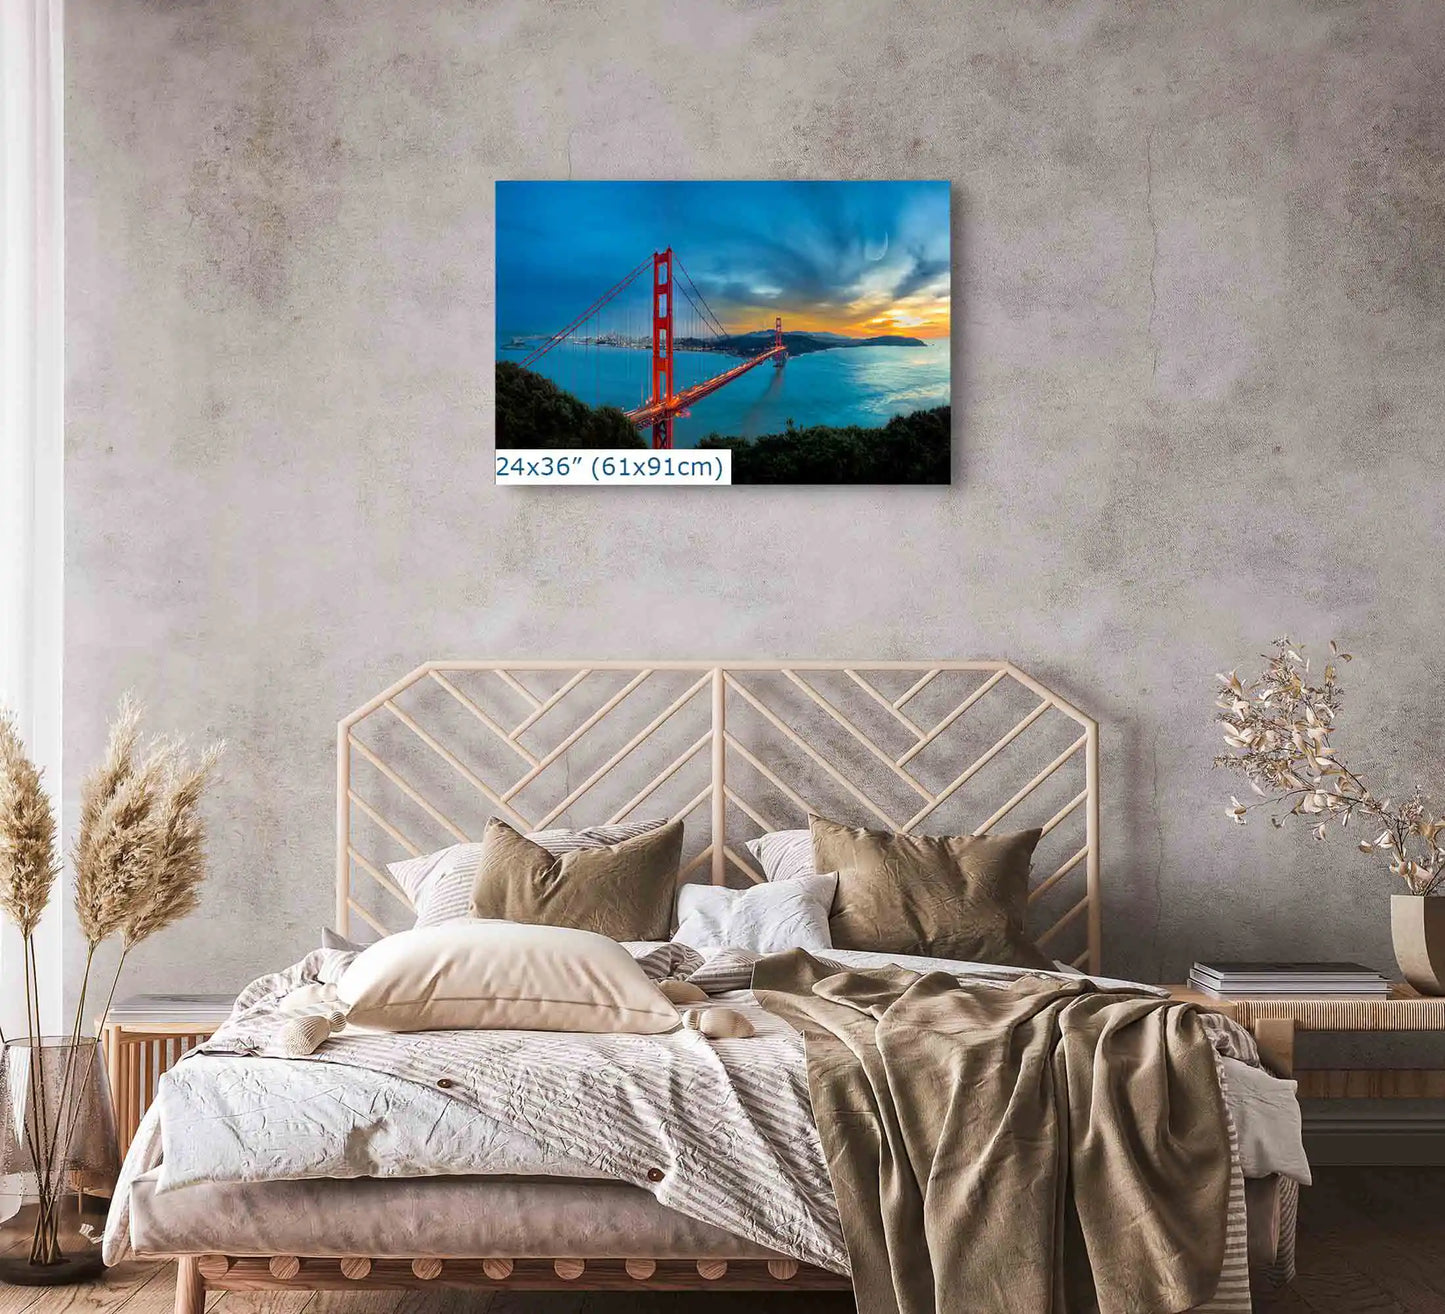 24x36-inch wall art in bedroom of Golden Gate Bridge